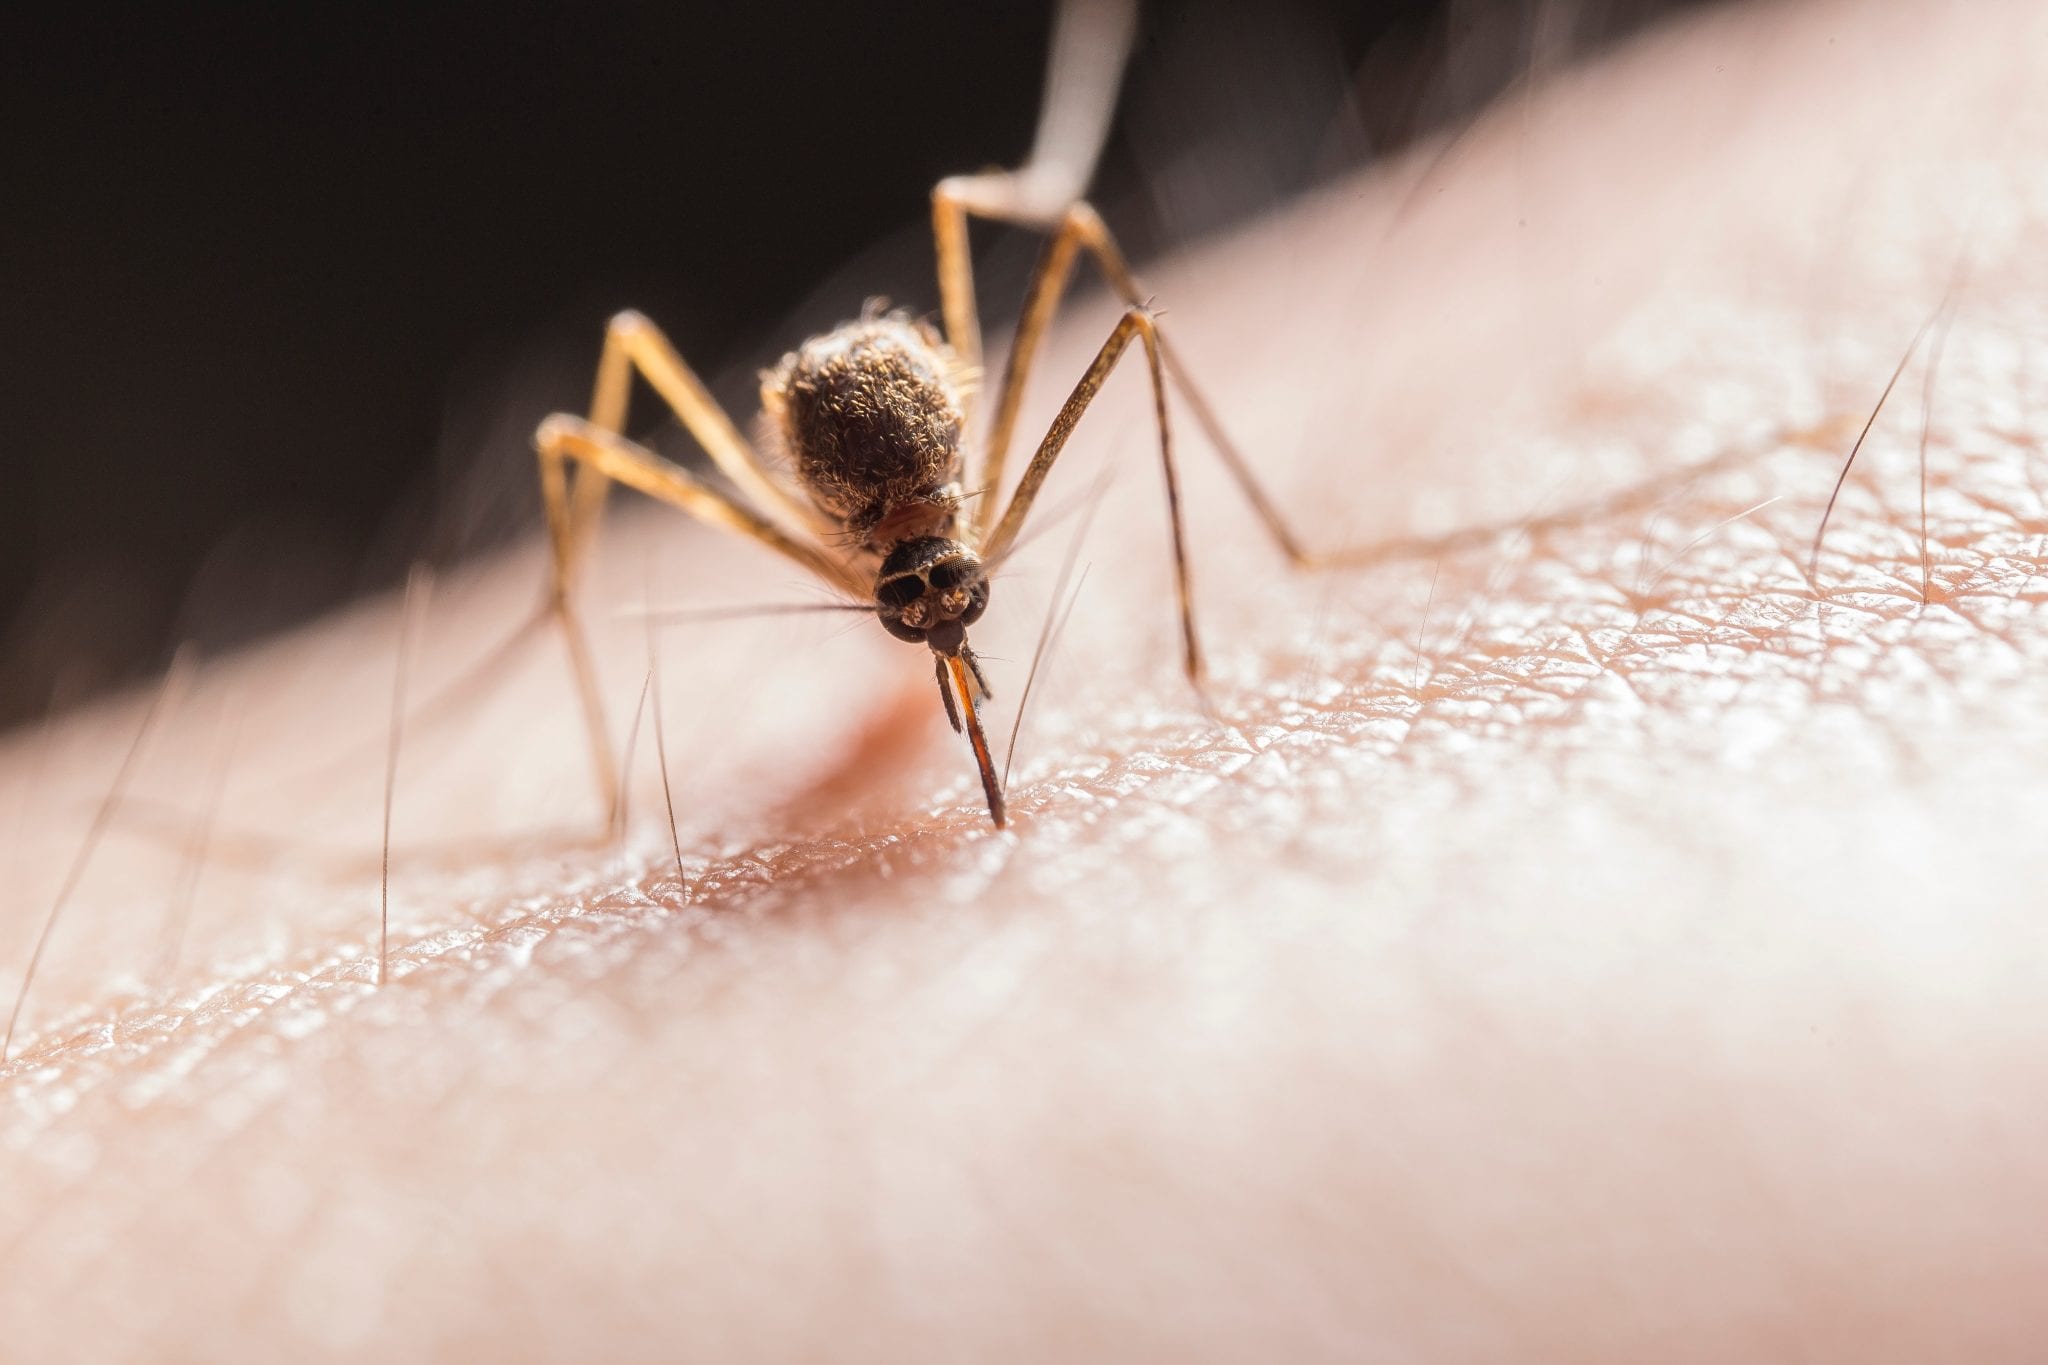 El Ministerio de Salud de Colombia reitera que la OMS continúa descartando la posibilidad de contagio del coronavirus a través de mosquitos. (Foto Prensa Libre: Pexels)